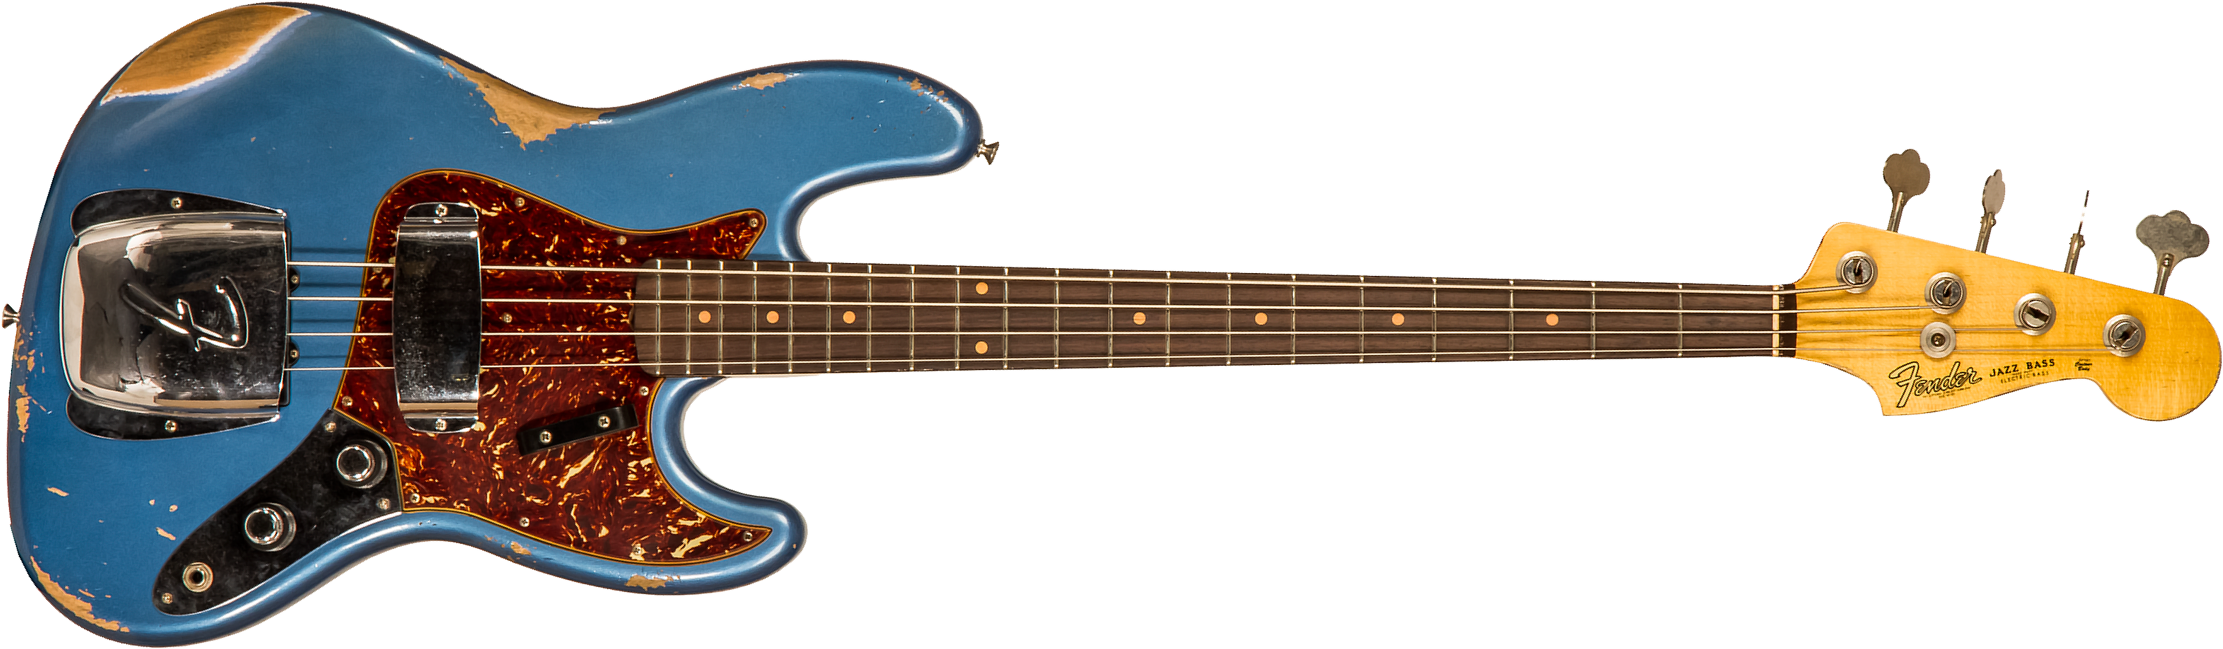 Fender Custom Shop Jazz Bass 1961 Rw #cz556667 - Heavy Relic Lake Placid Blue - Bajo eléctrico de cuerpo sólido - Main picture